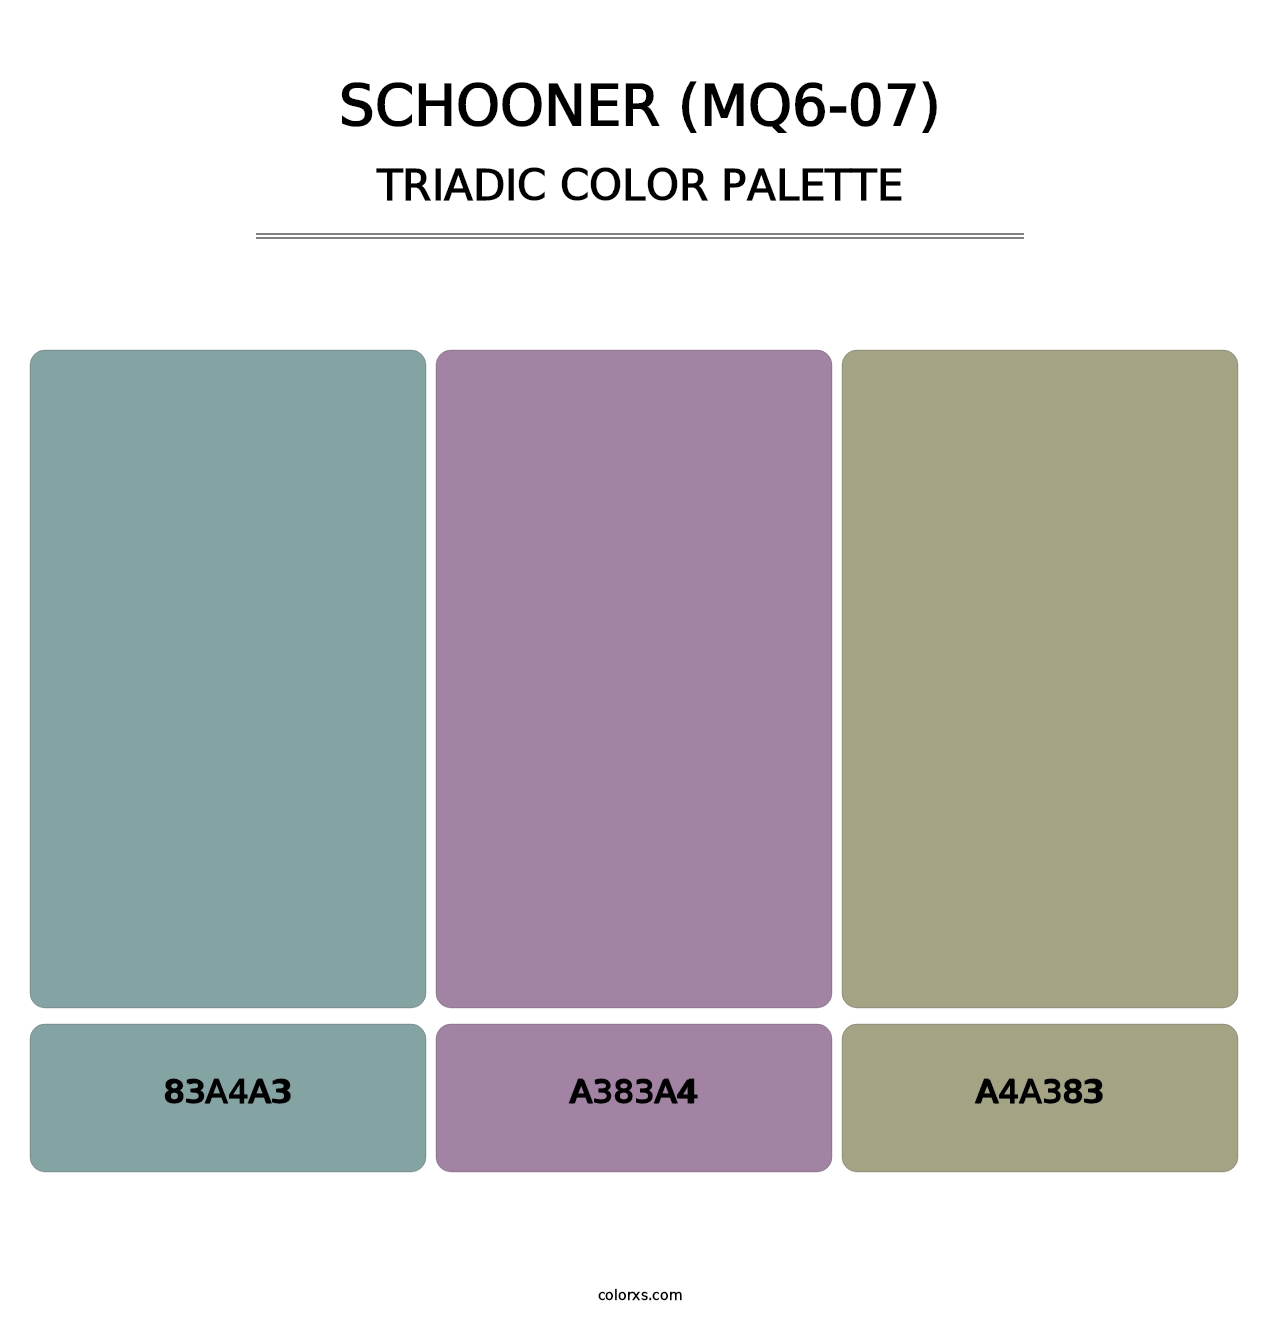 Schooner (MQ6-07) - Triadic Color Palette